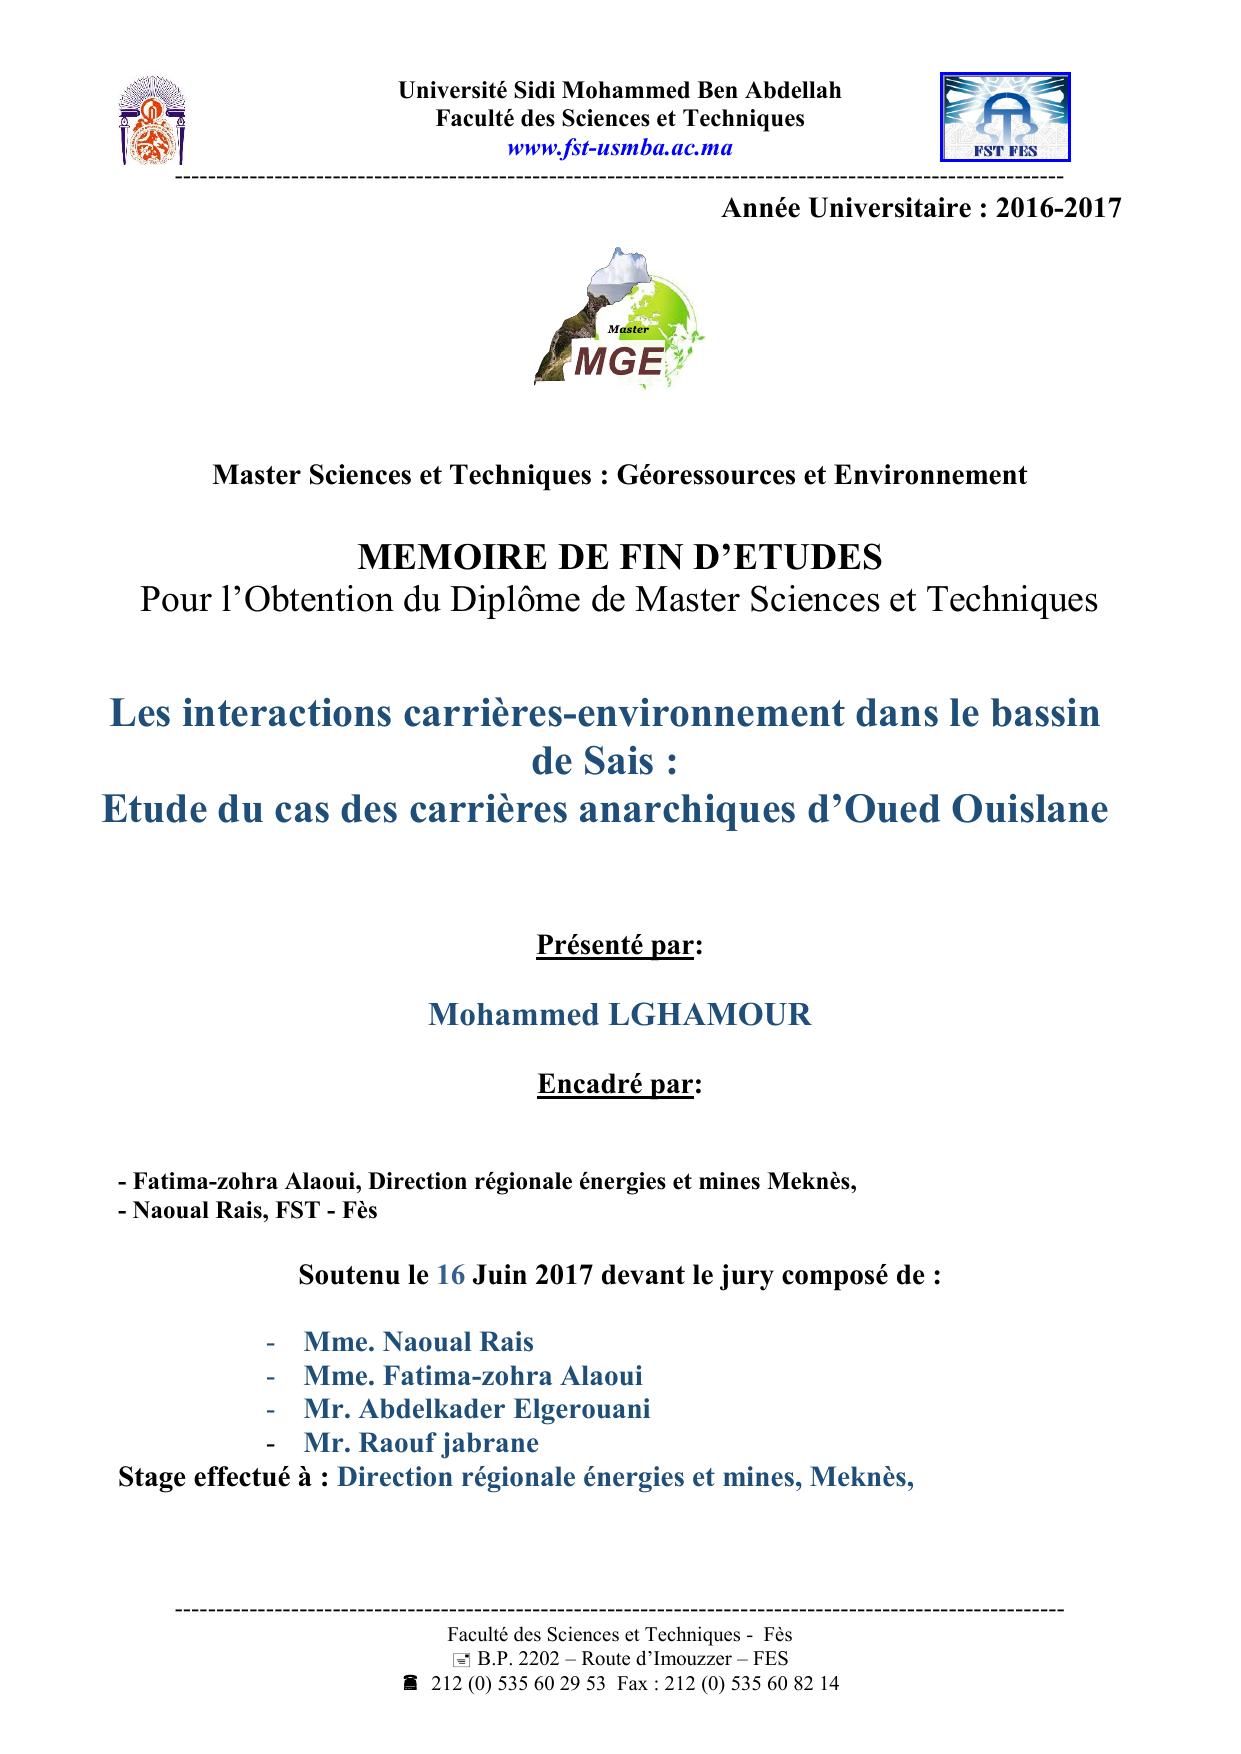 Les interactions carrières-environnement dans le bassin de Sais : Etude du cas des carrières anarchiques d’Oued Ouislane